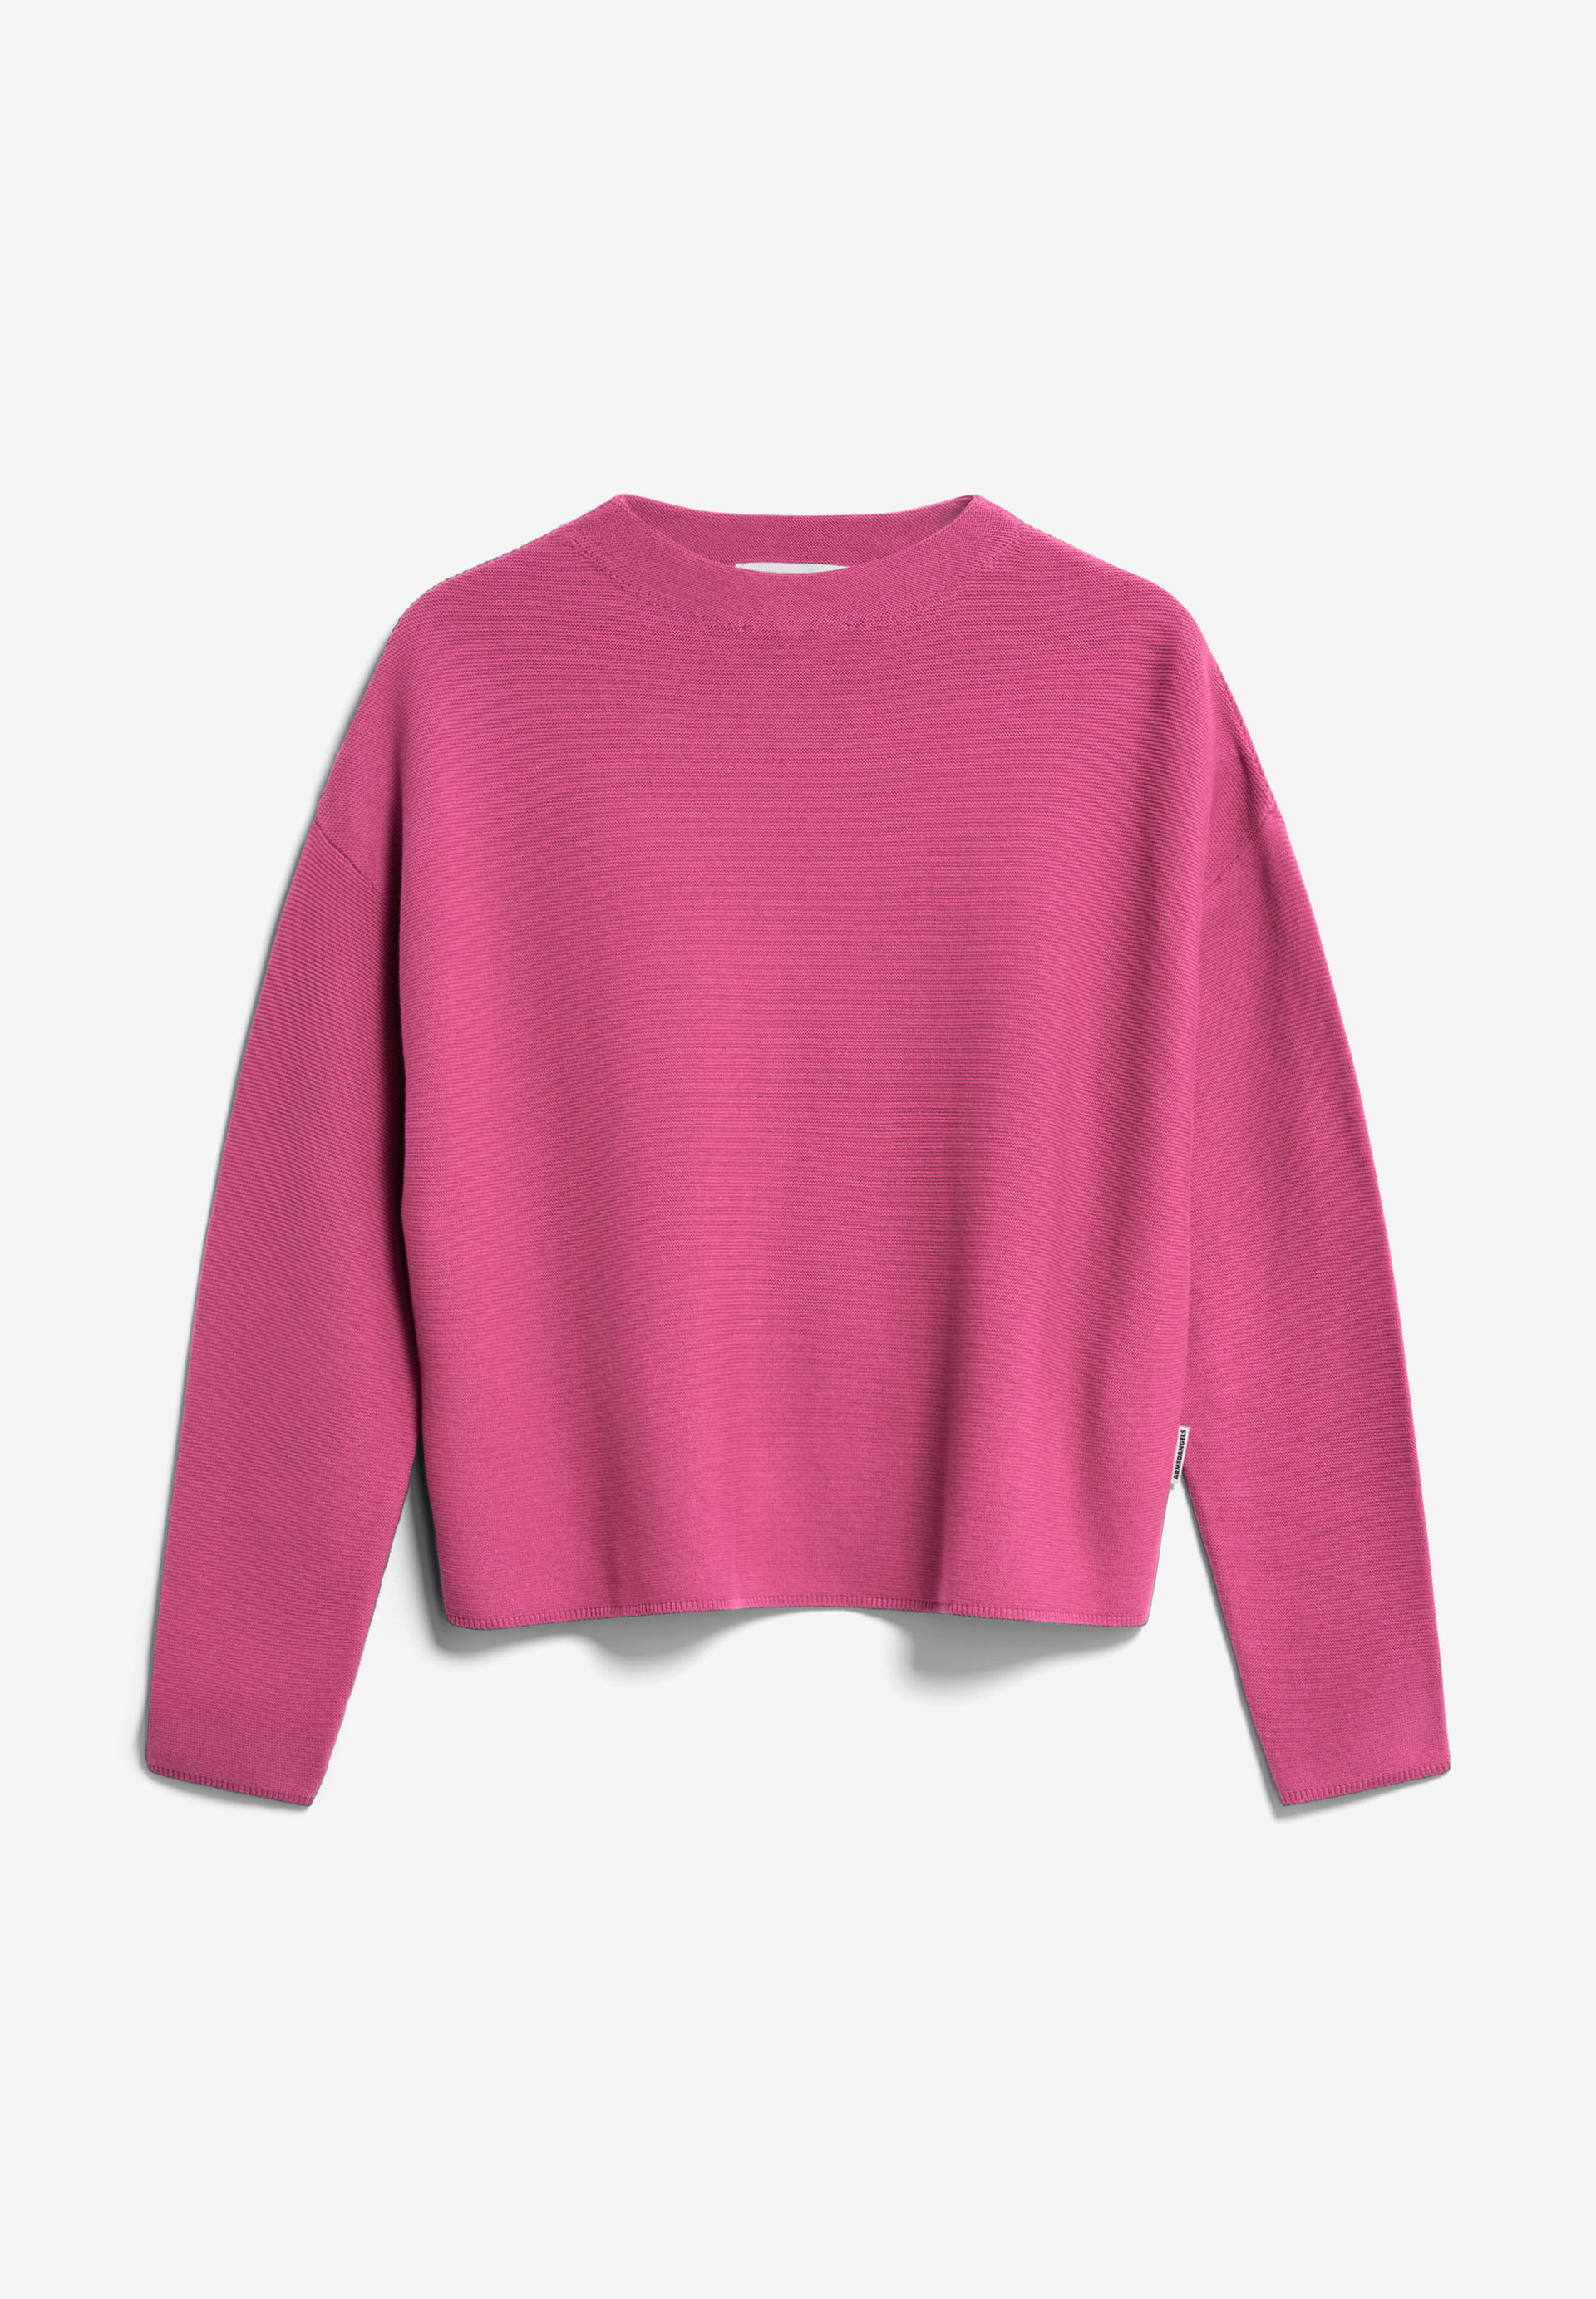 MERINAA LINKS LINKS Sweater van bio katoen